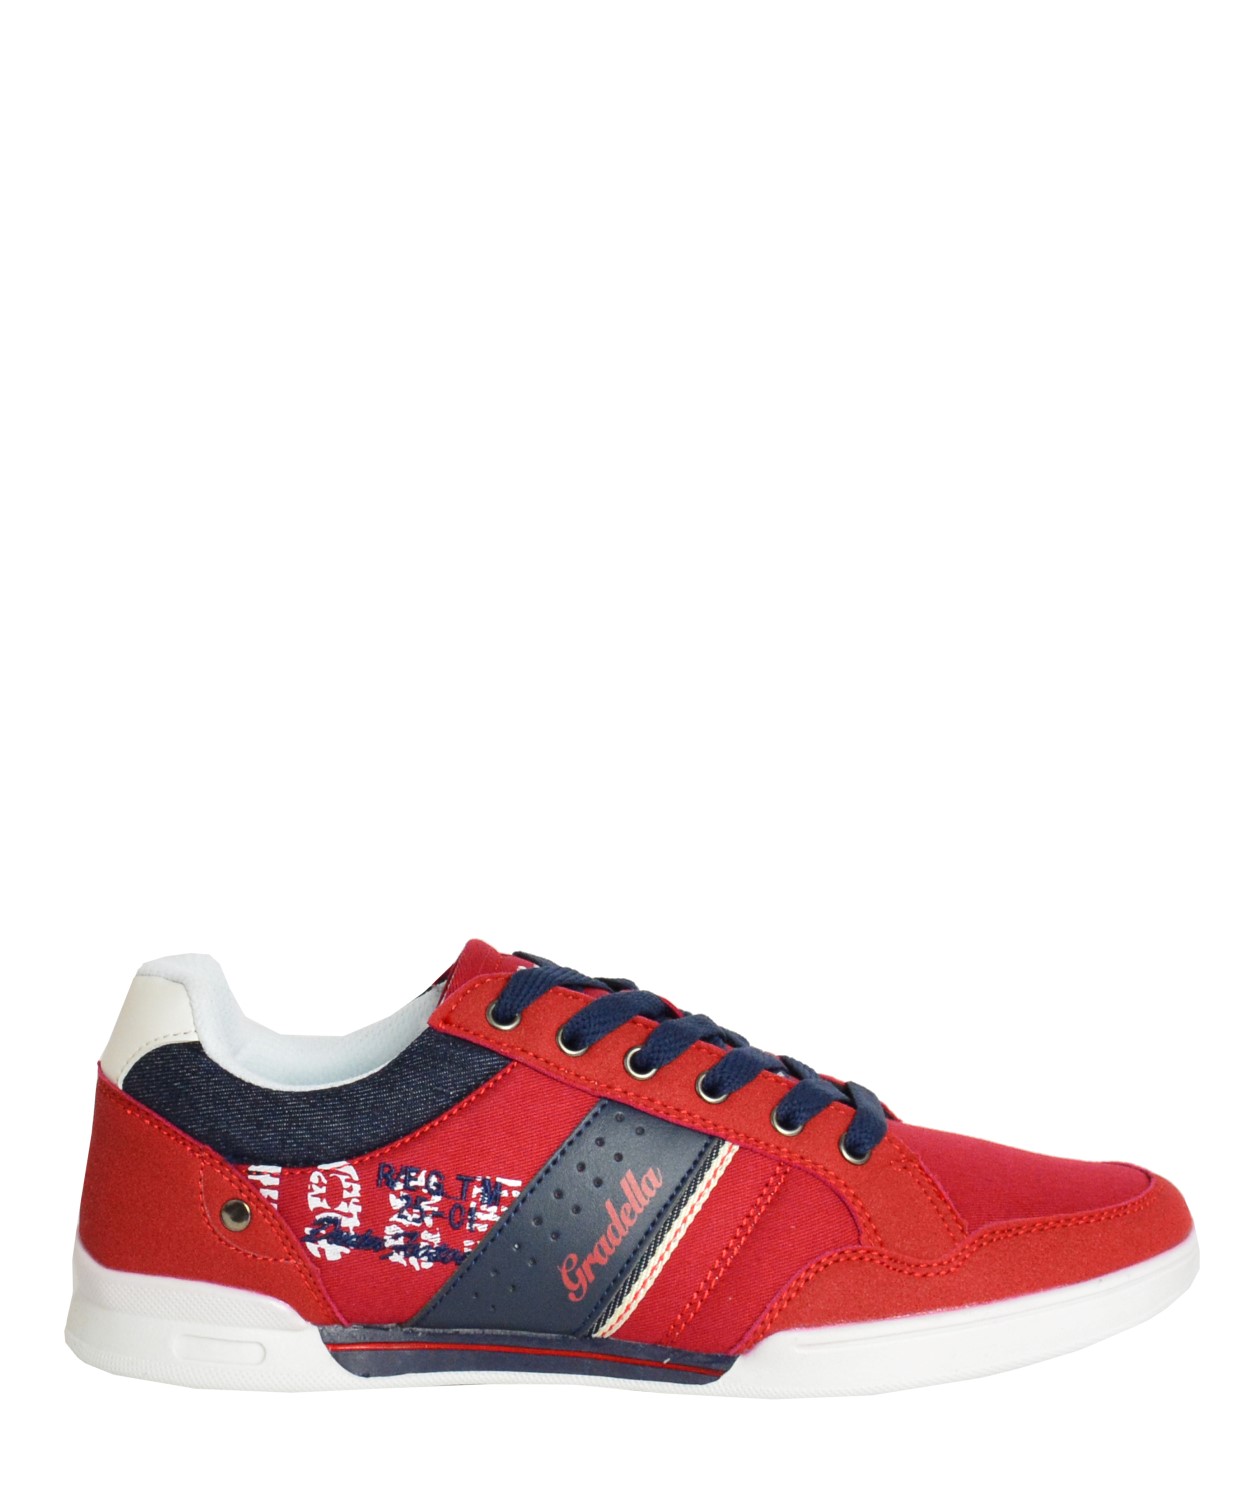 Ανδρικά Casual παπούτσια κόκκινα χαμηλά κορδόνια K70422C